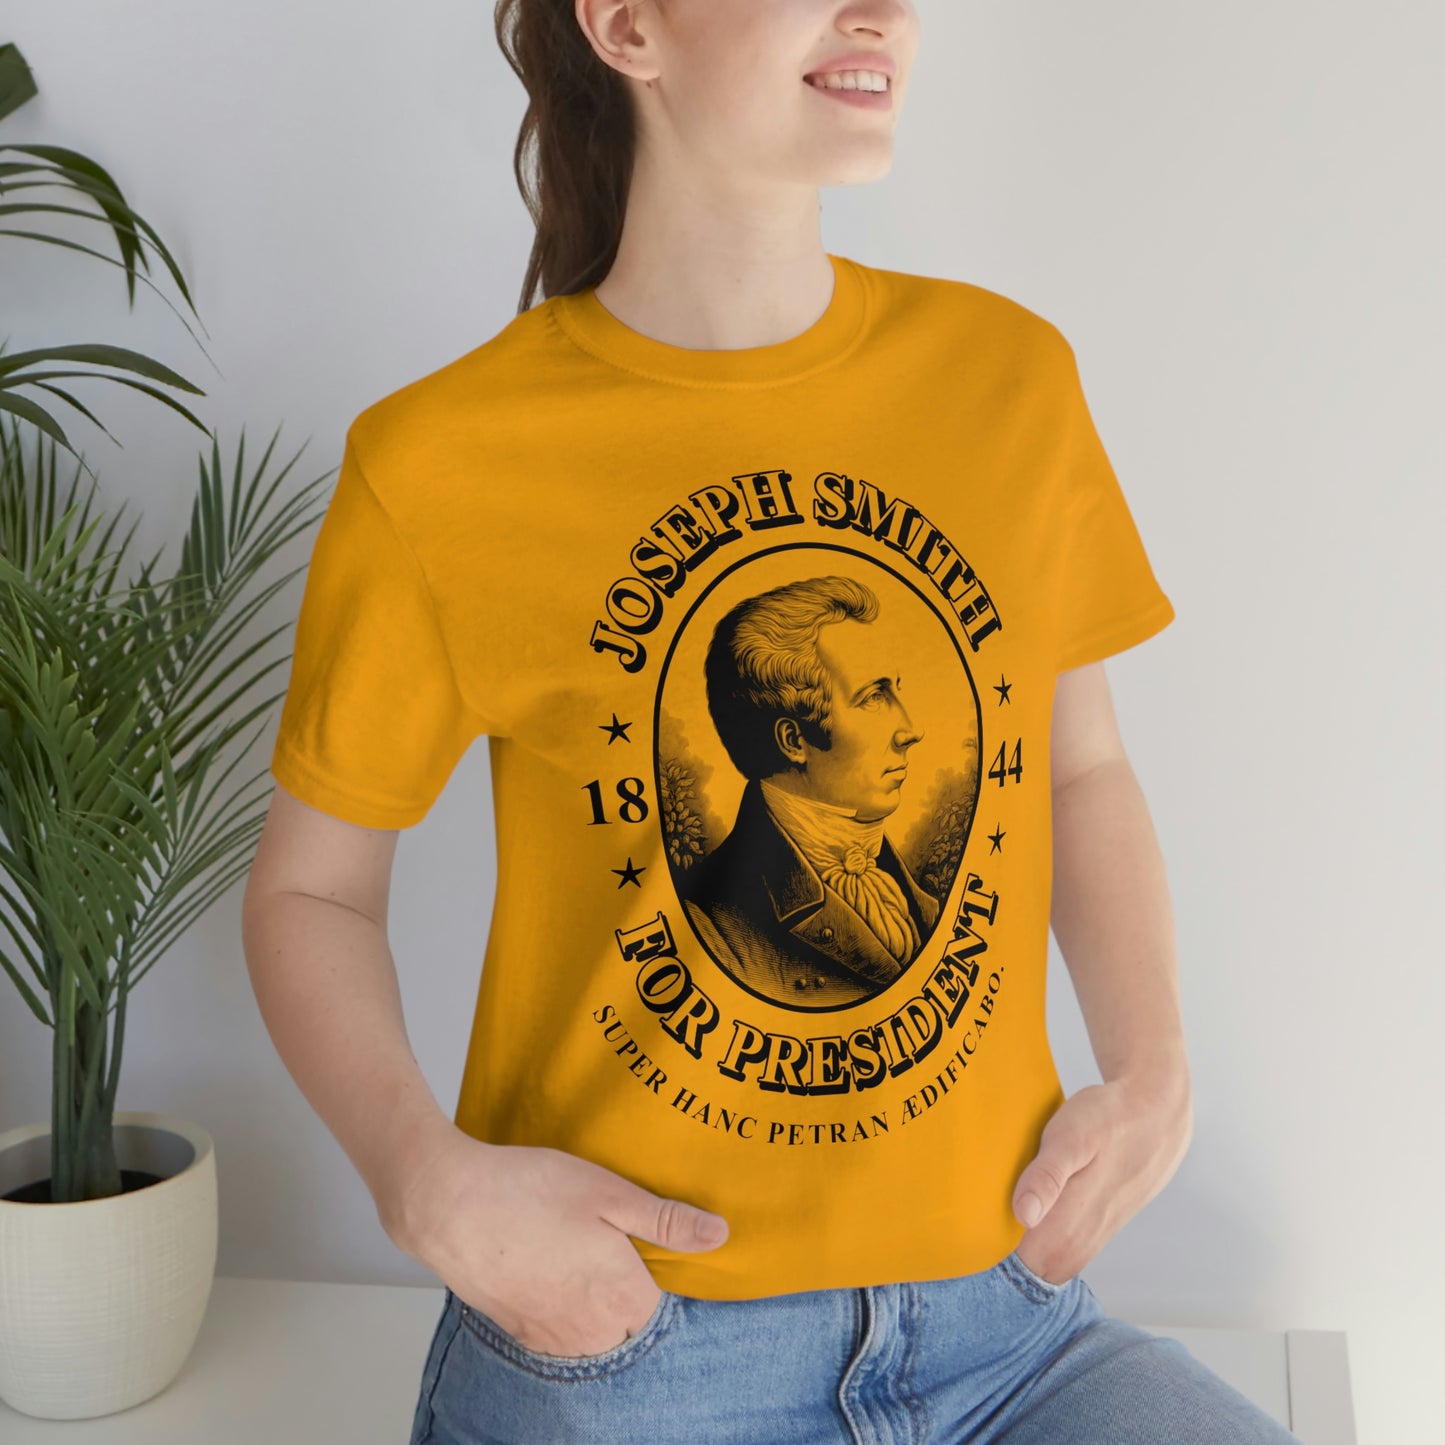 Joseph Smith For President 1844 T-Shirt